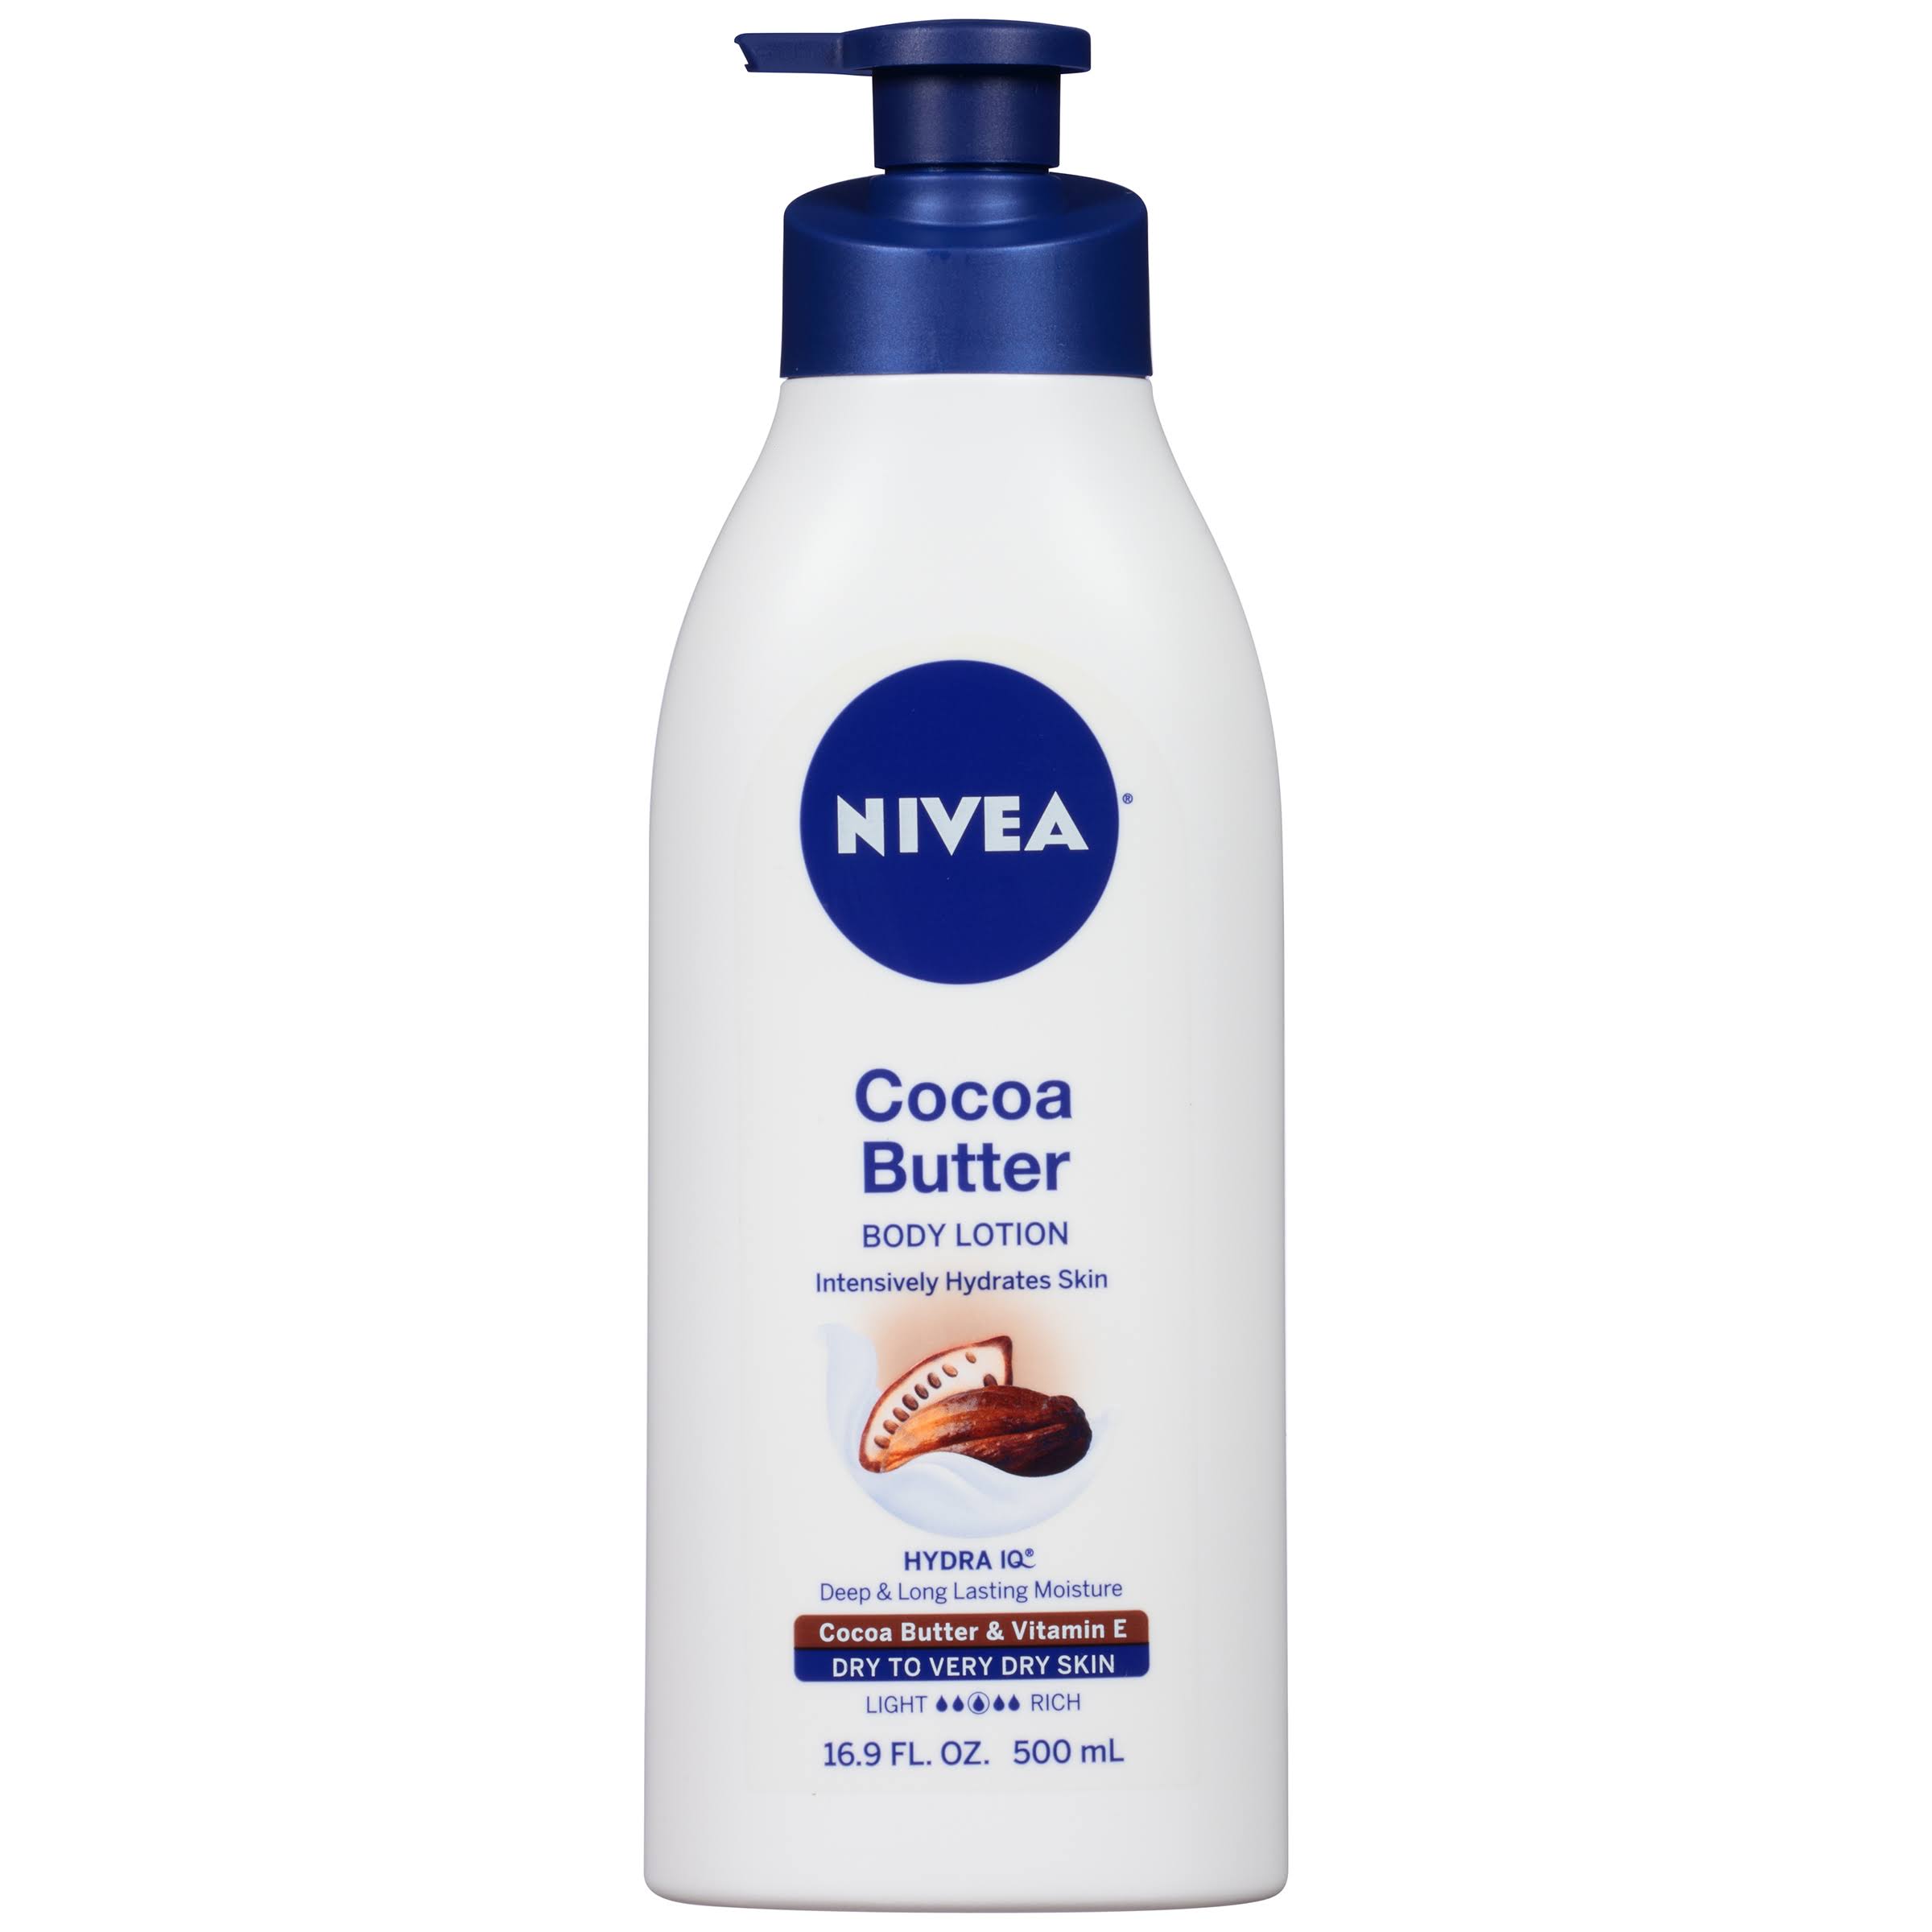 Nivea Cocoa Butter Body Lotion - 16.9 oz